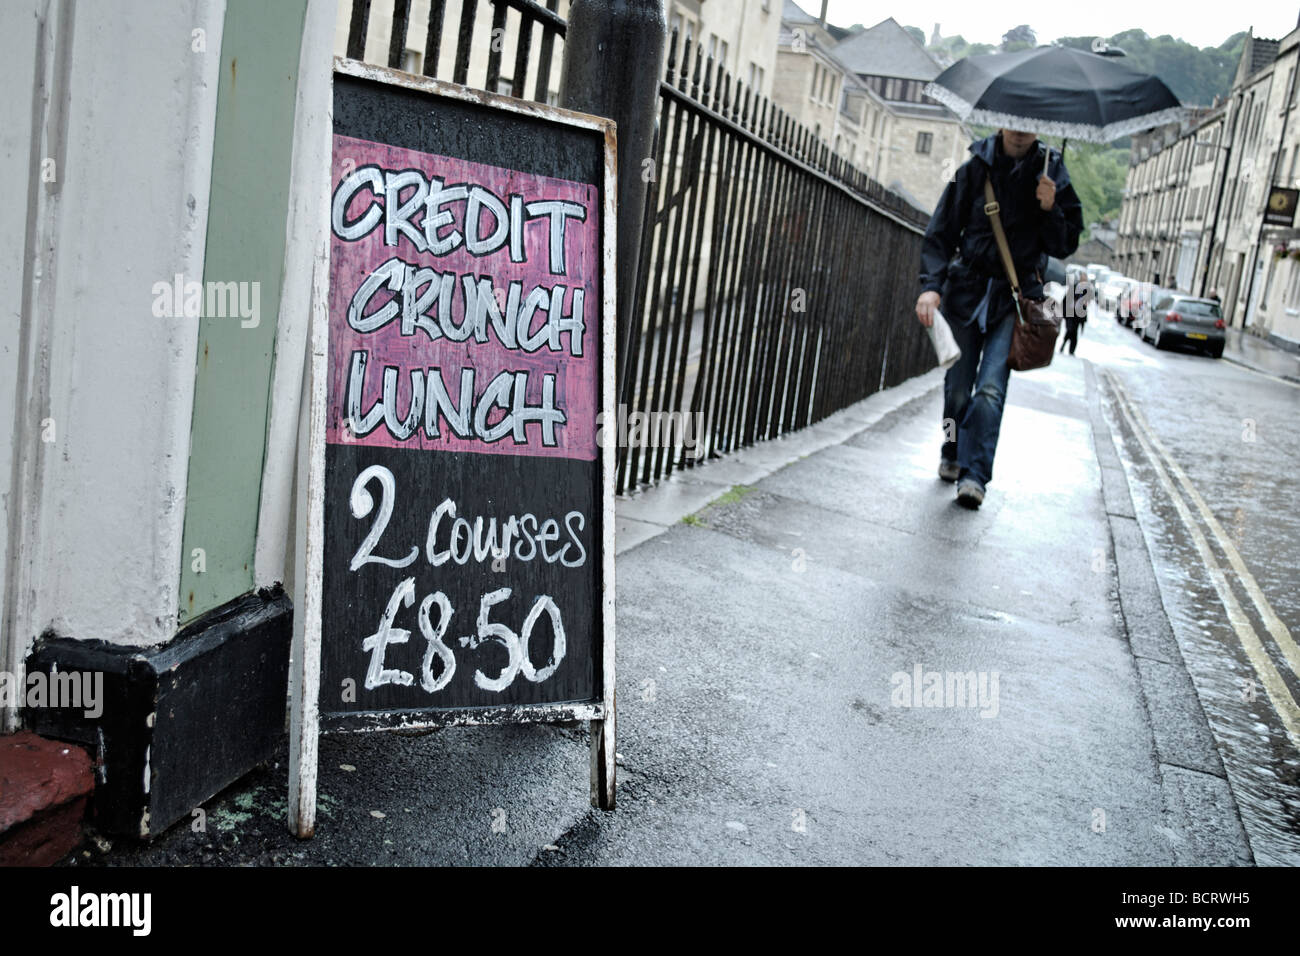 Credit crunch almuerzo firmar fuera de restaurante en el baño al sur oeste de Inglaterra Foto de stock